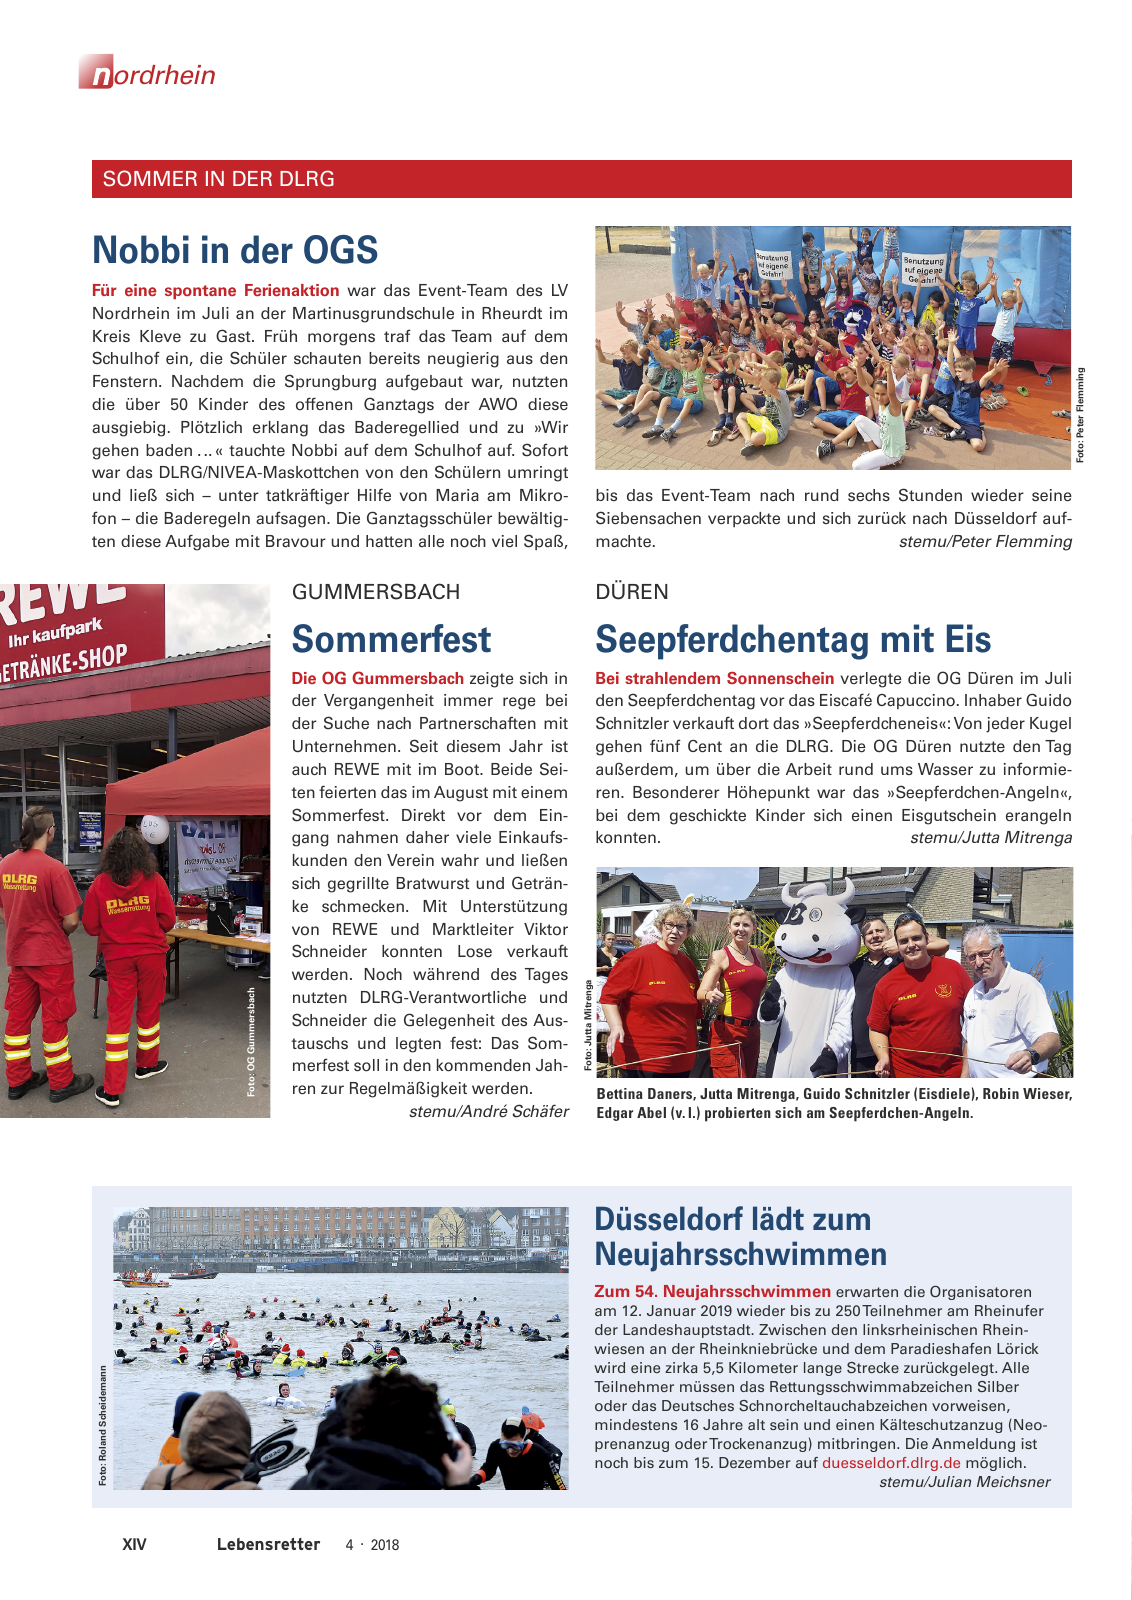 Vorschau Lebensretter 4/2018 - Regionalausgabe Nordrhein Seite 16